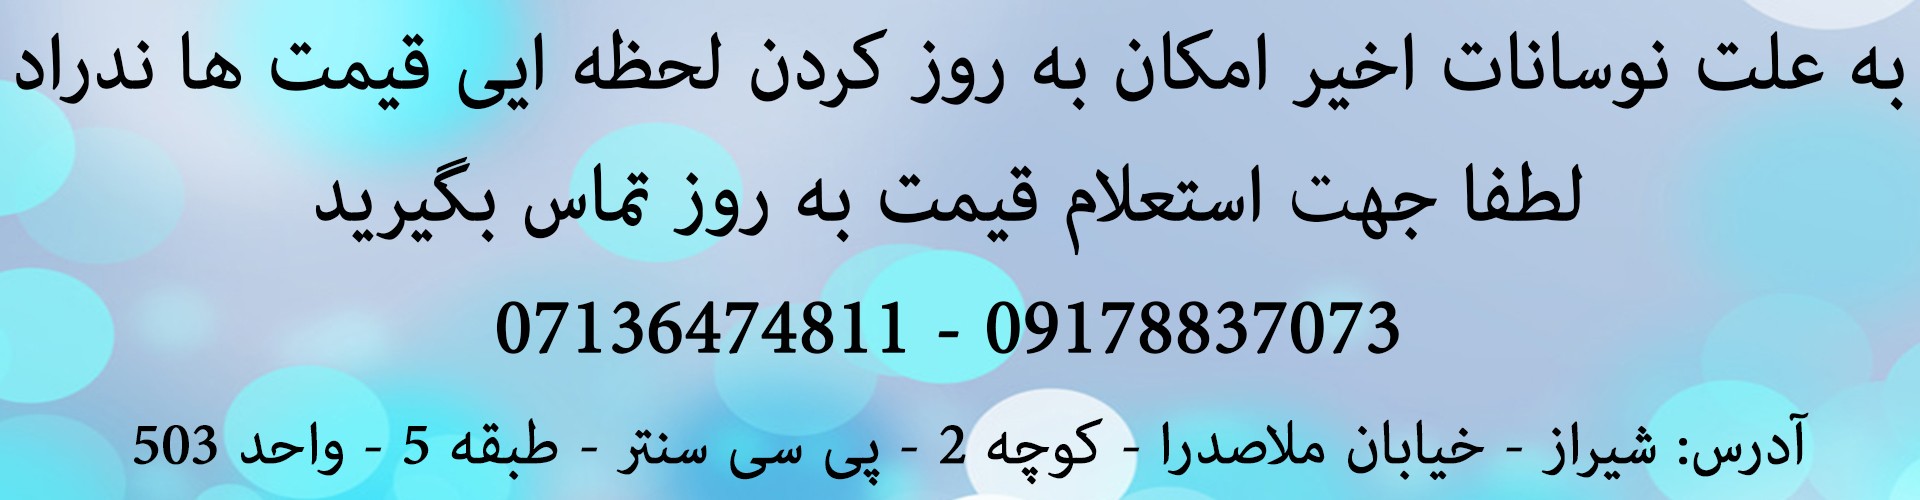 تماس بگیرید 09178837073 غفاری